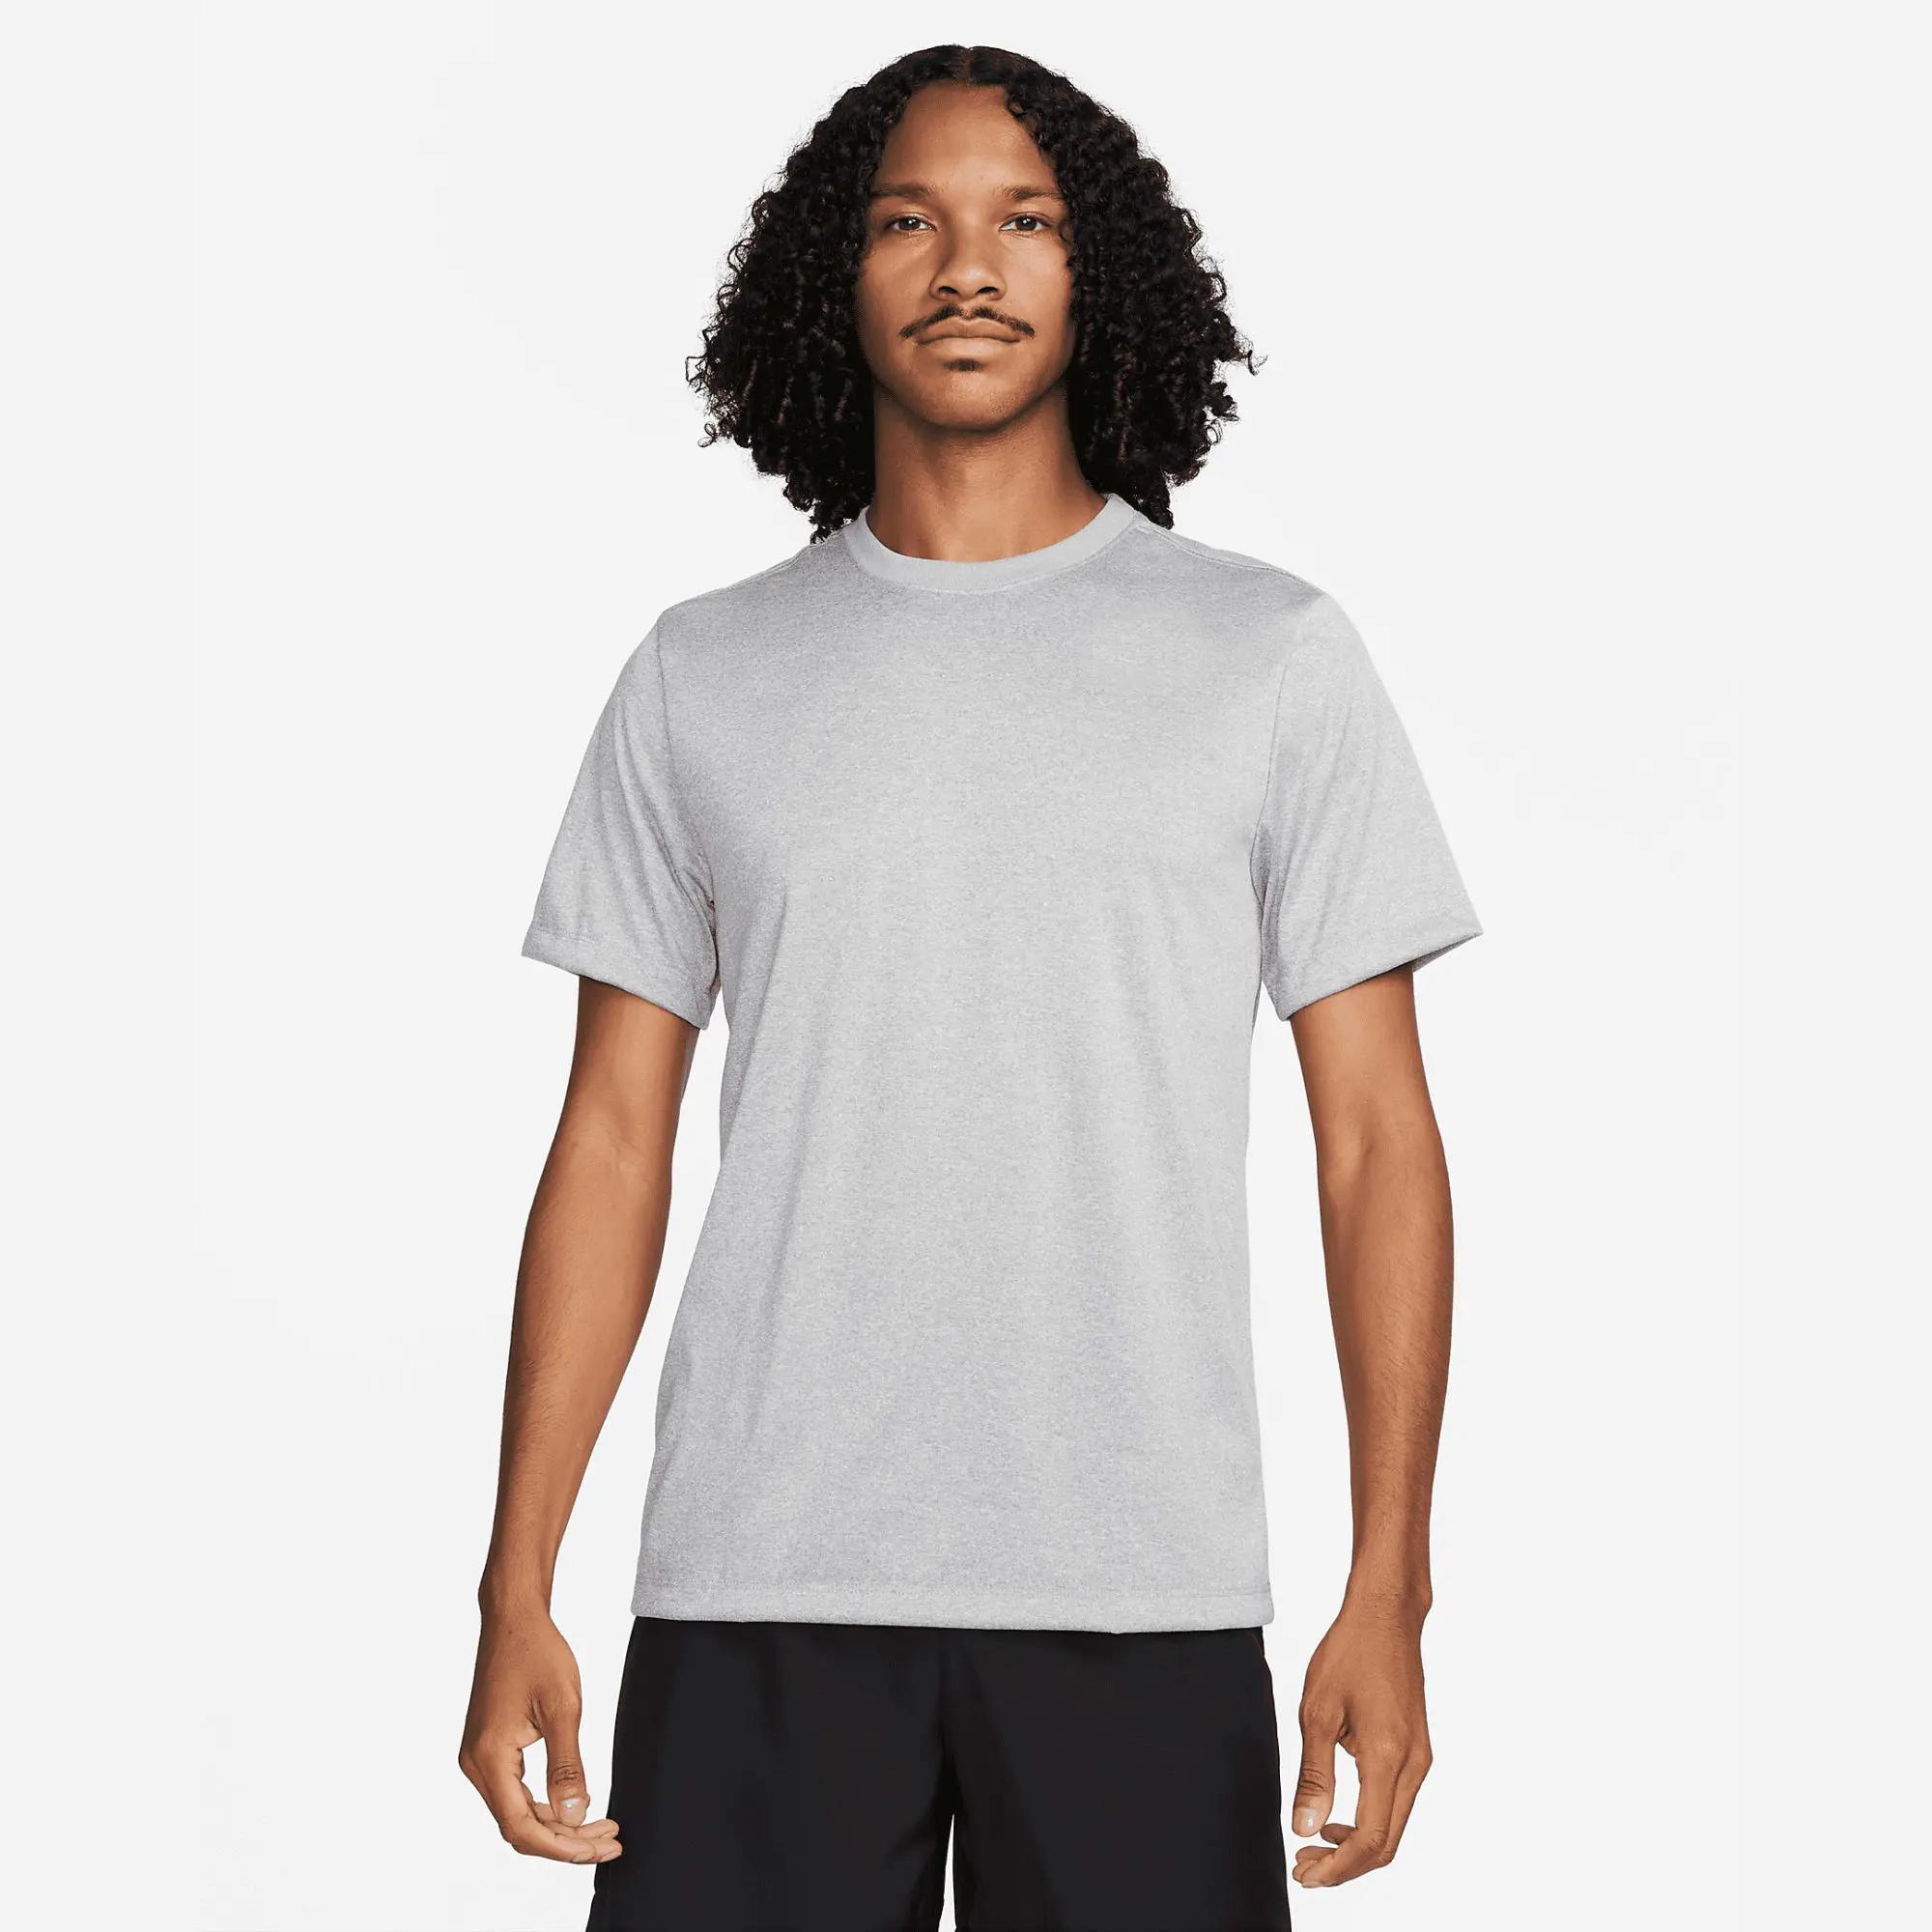 Herren XL Fitness-T-Shirt 100 % Polyester Überwurfgrau Jersey Stoff entspannte Standard-Anpassung mit geripptem Nackenband Druckmuster